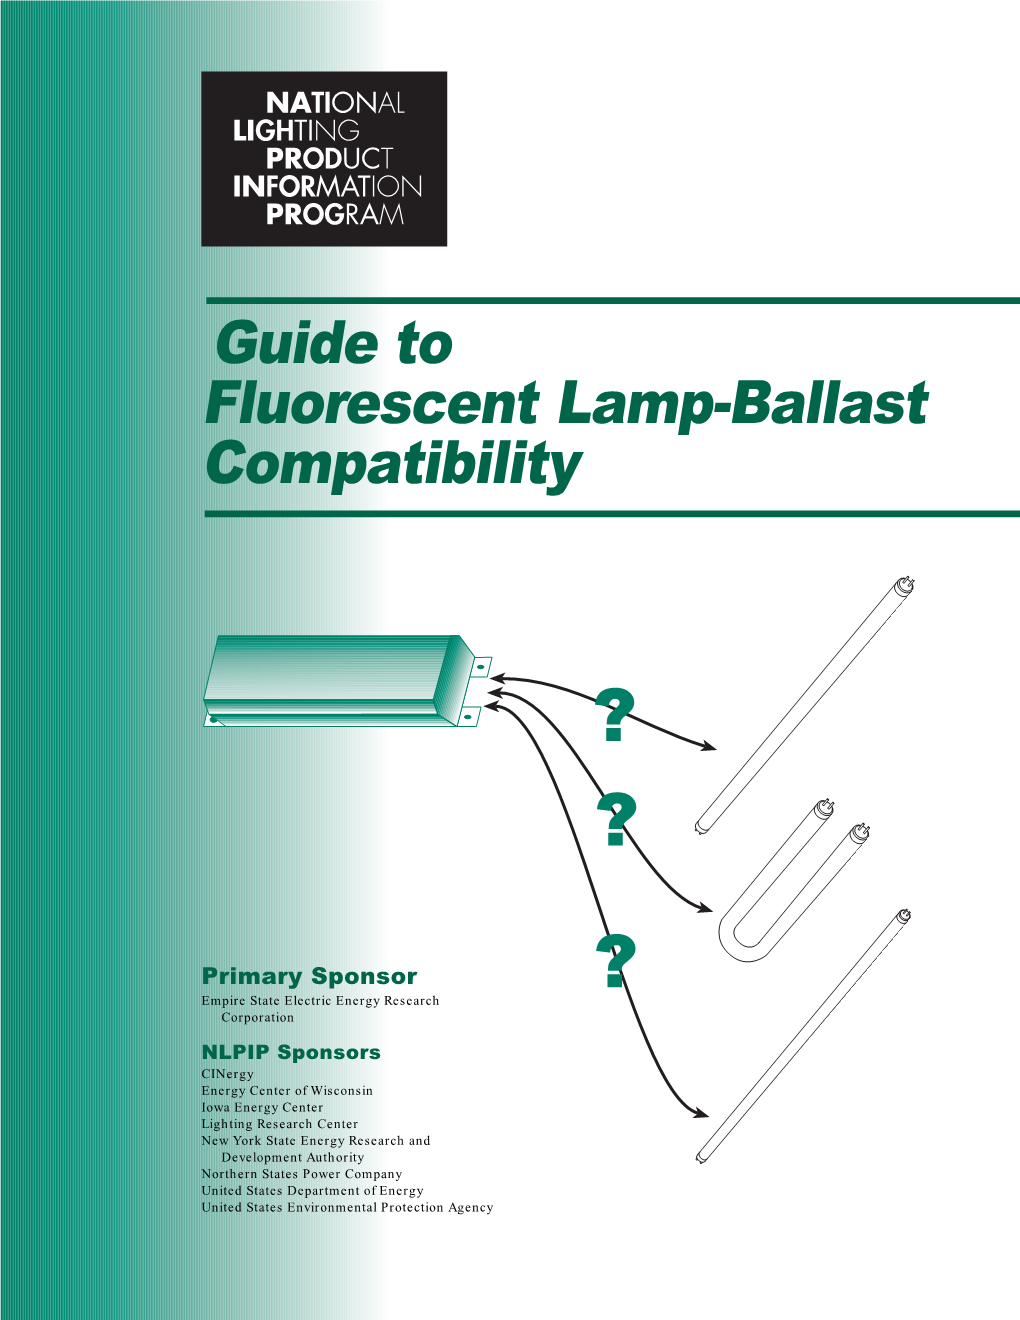 Guide to Fluorescent Lamp-Ballast Compatibility